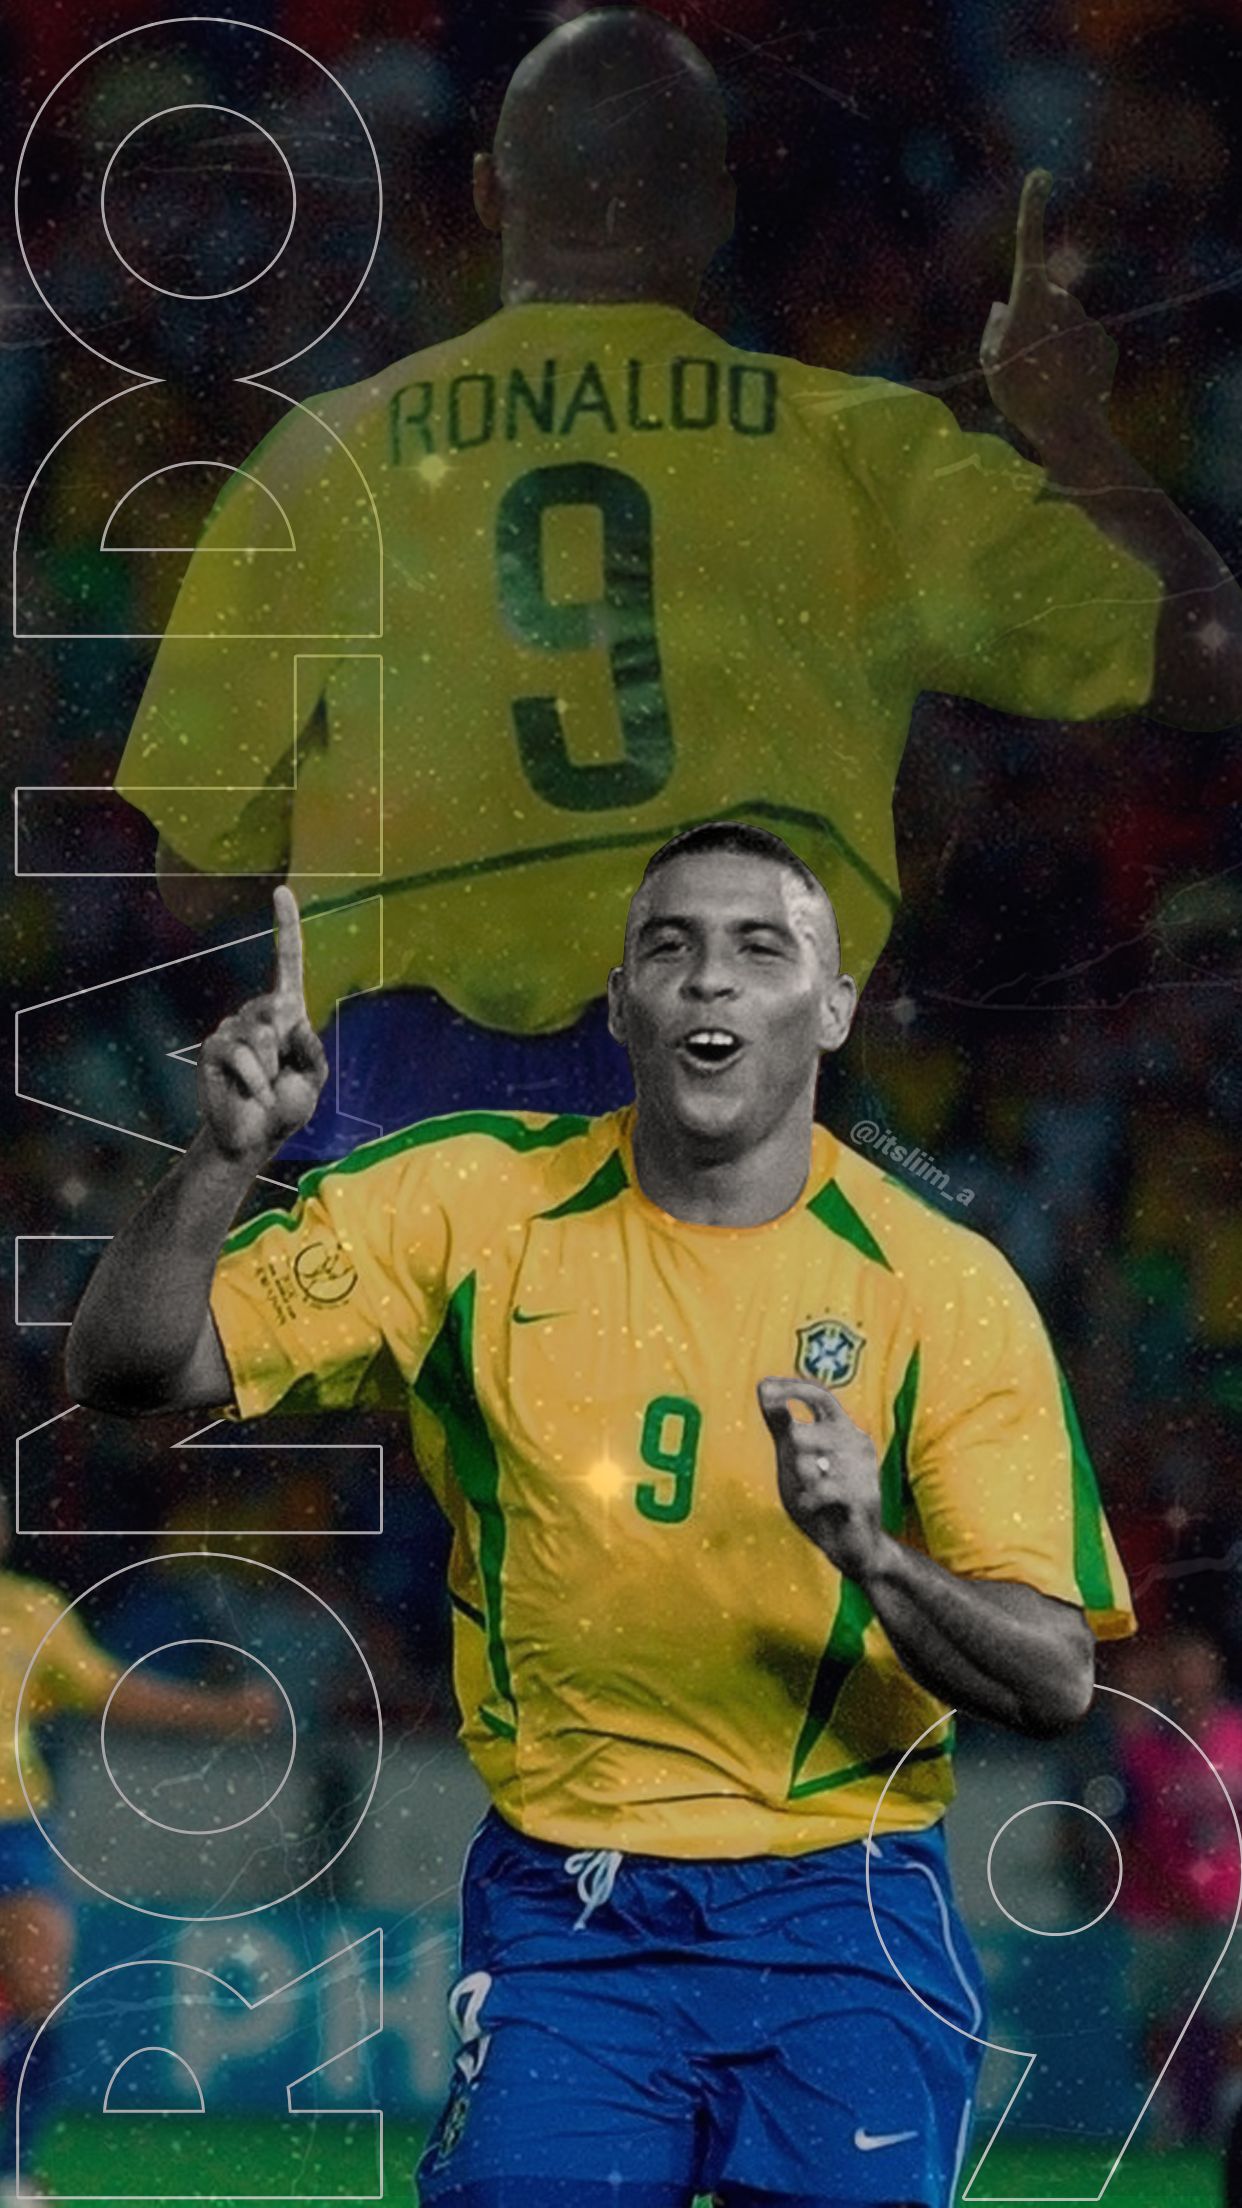 Hầu hết những người yêu thích bóng đá đều biết tài năng của Ronaldo Luís Nazário De Lima. Hình nền của anh sẽ giúp bạn cảm nhận được sự khác biệt của một huyền thoại bóng đá với sự nghiệp thành công và danh tiếng to lớn.